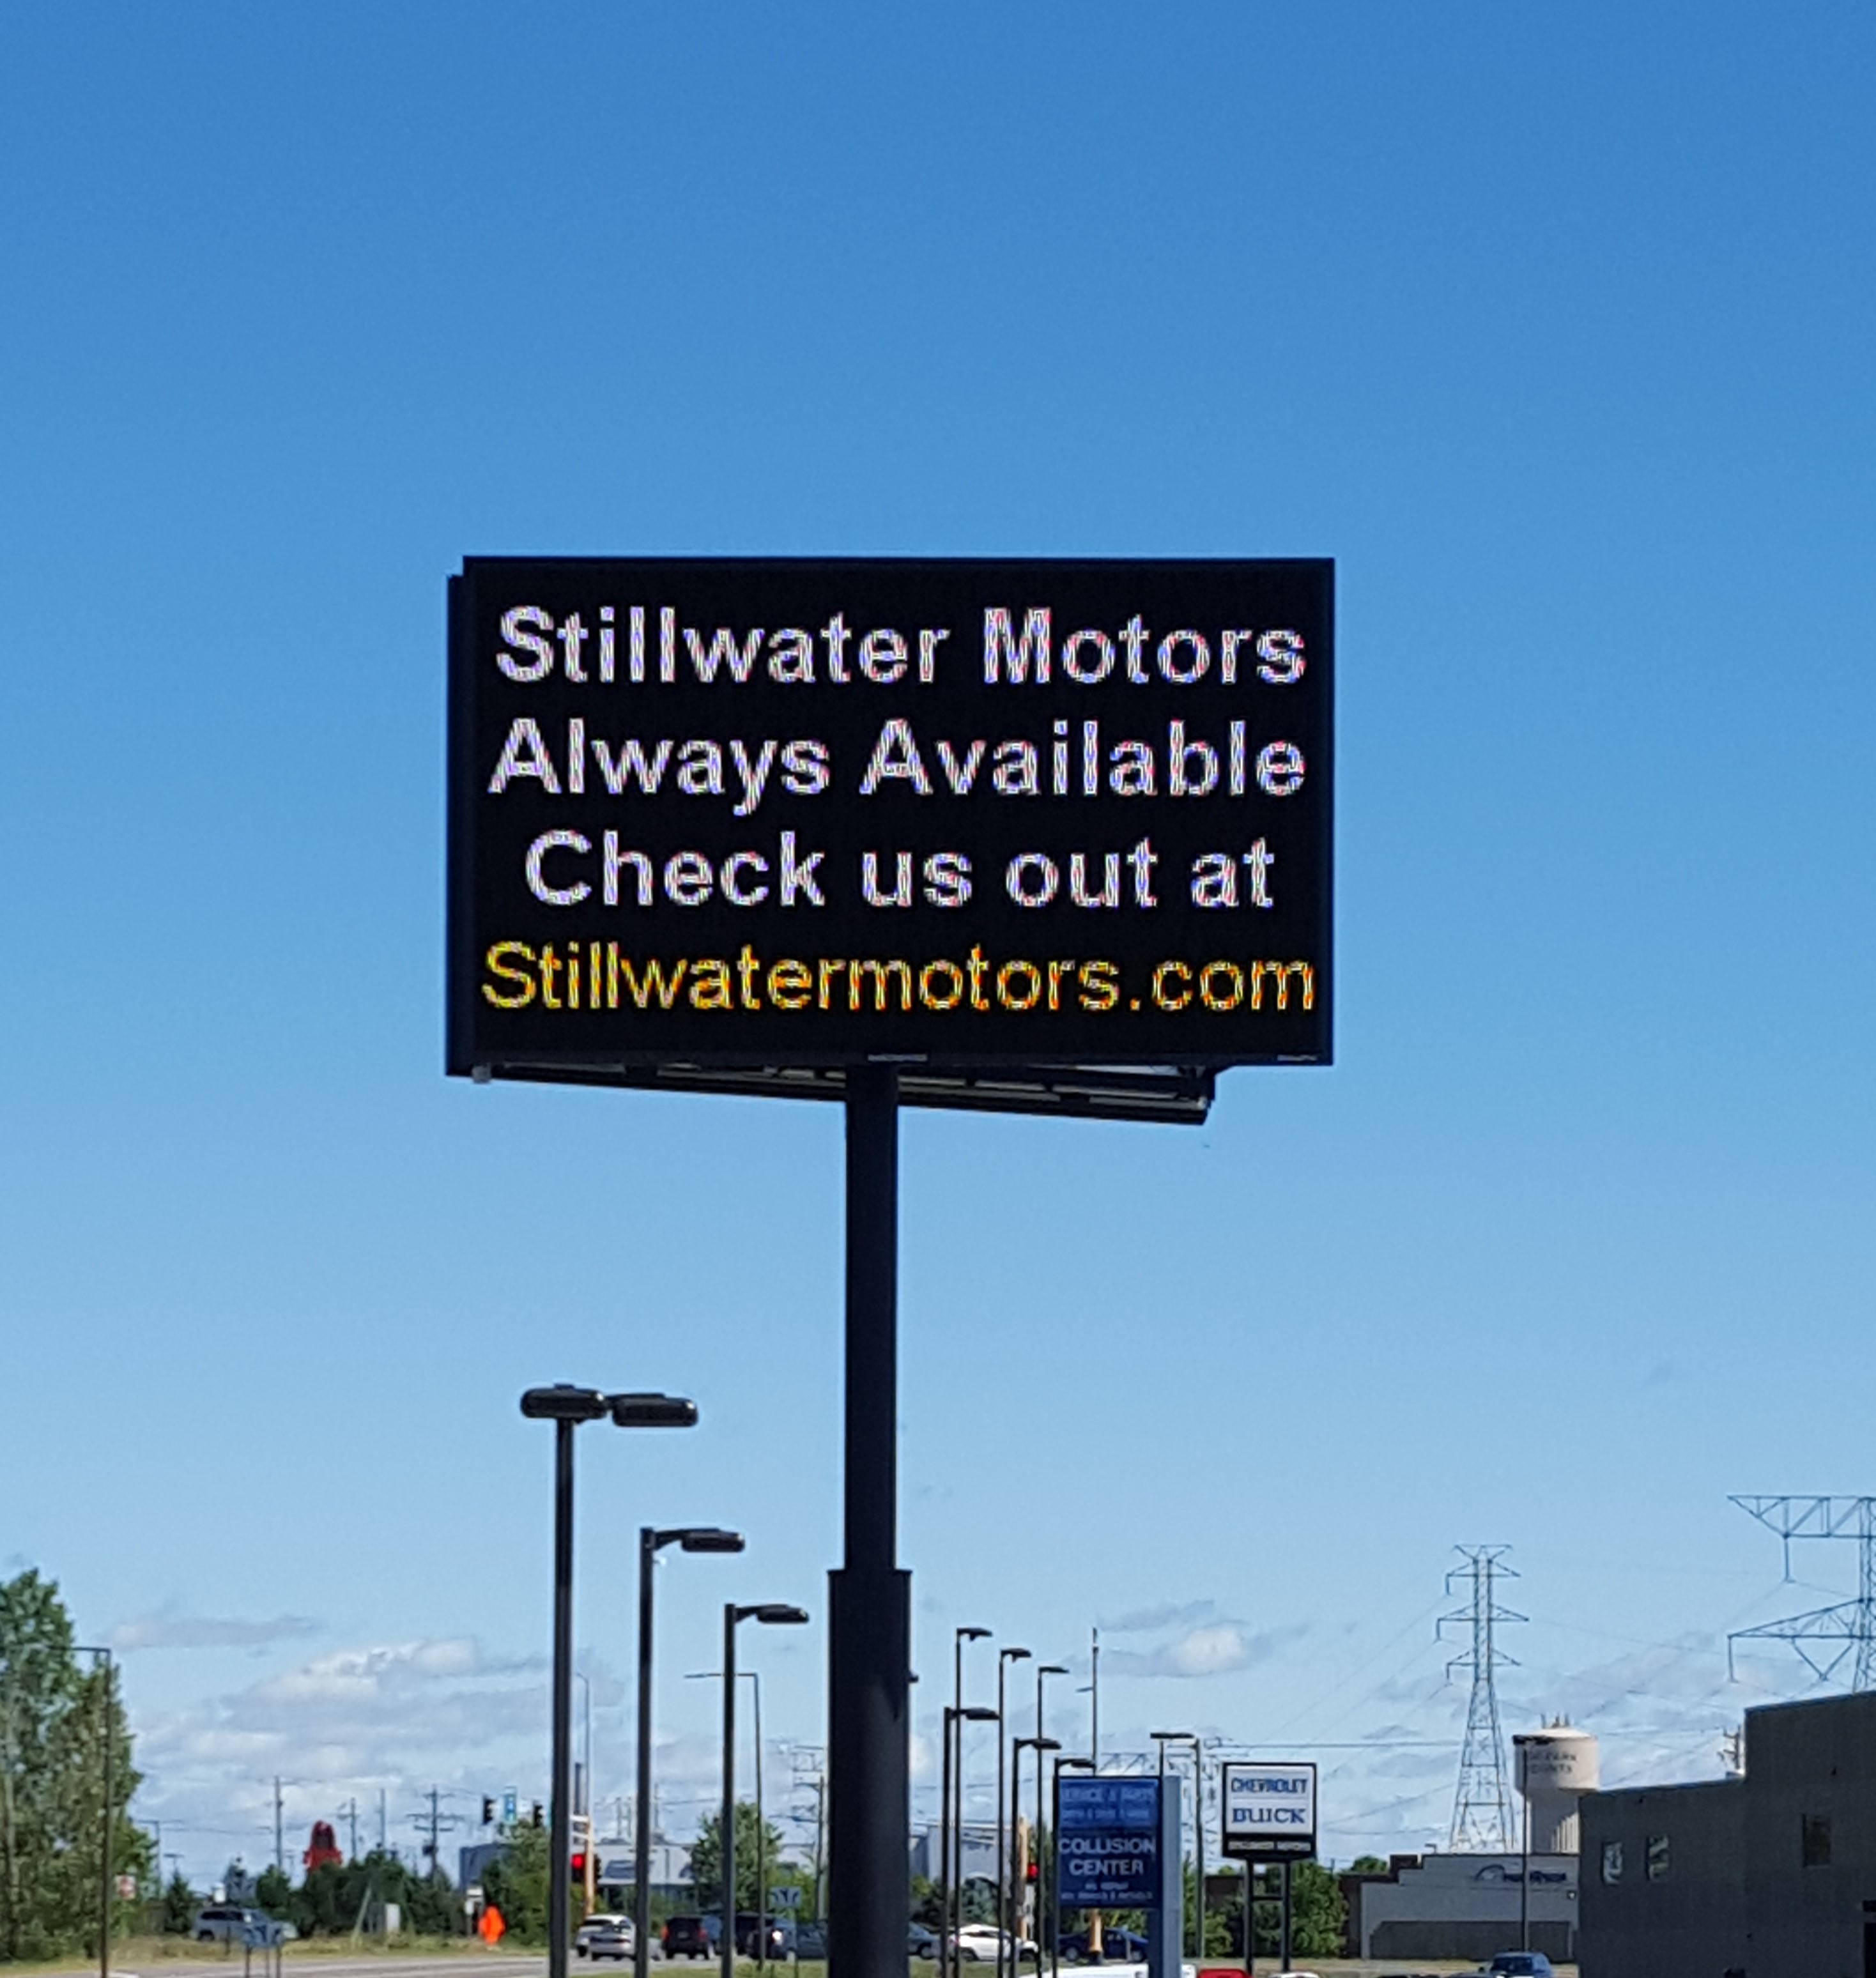 Stillwater Motors message board